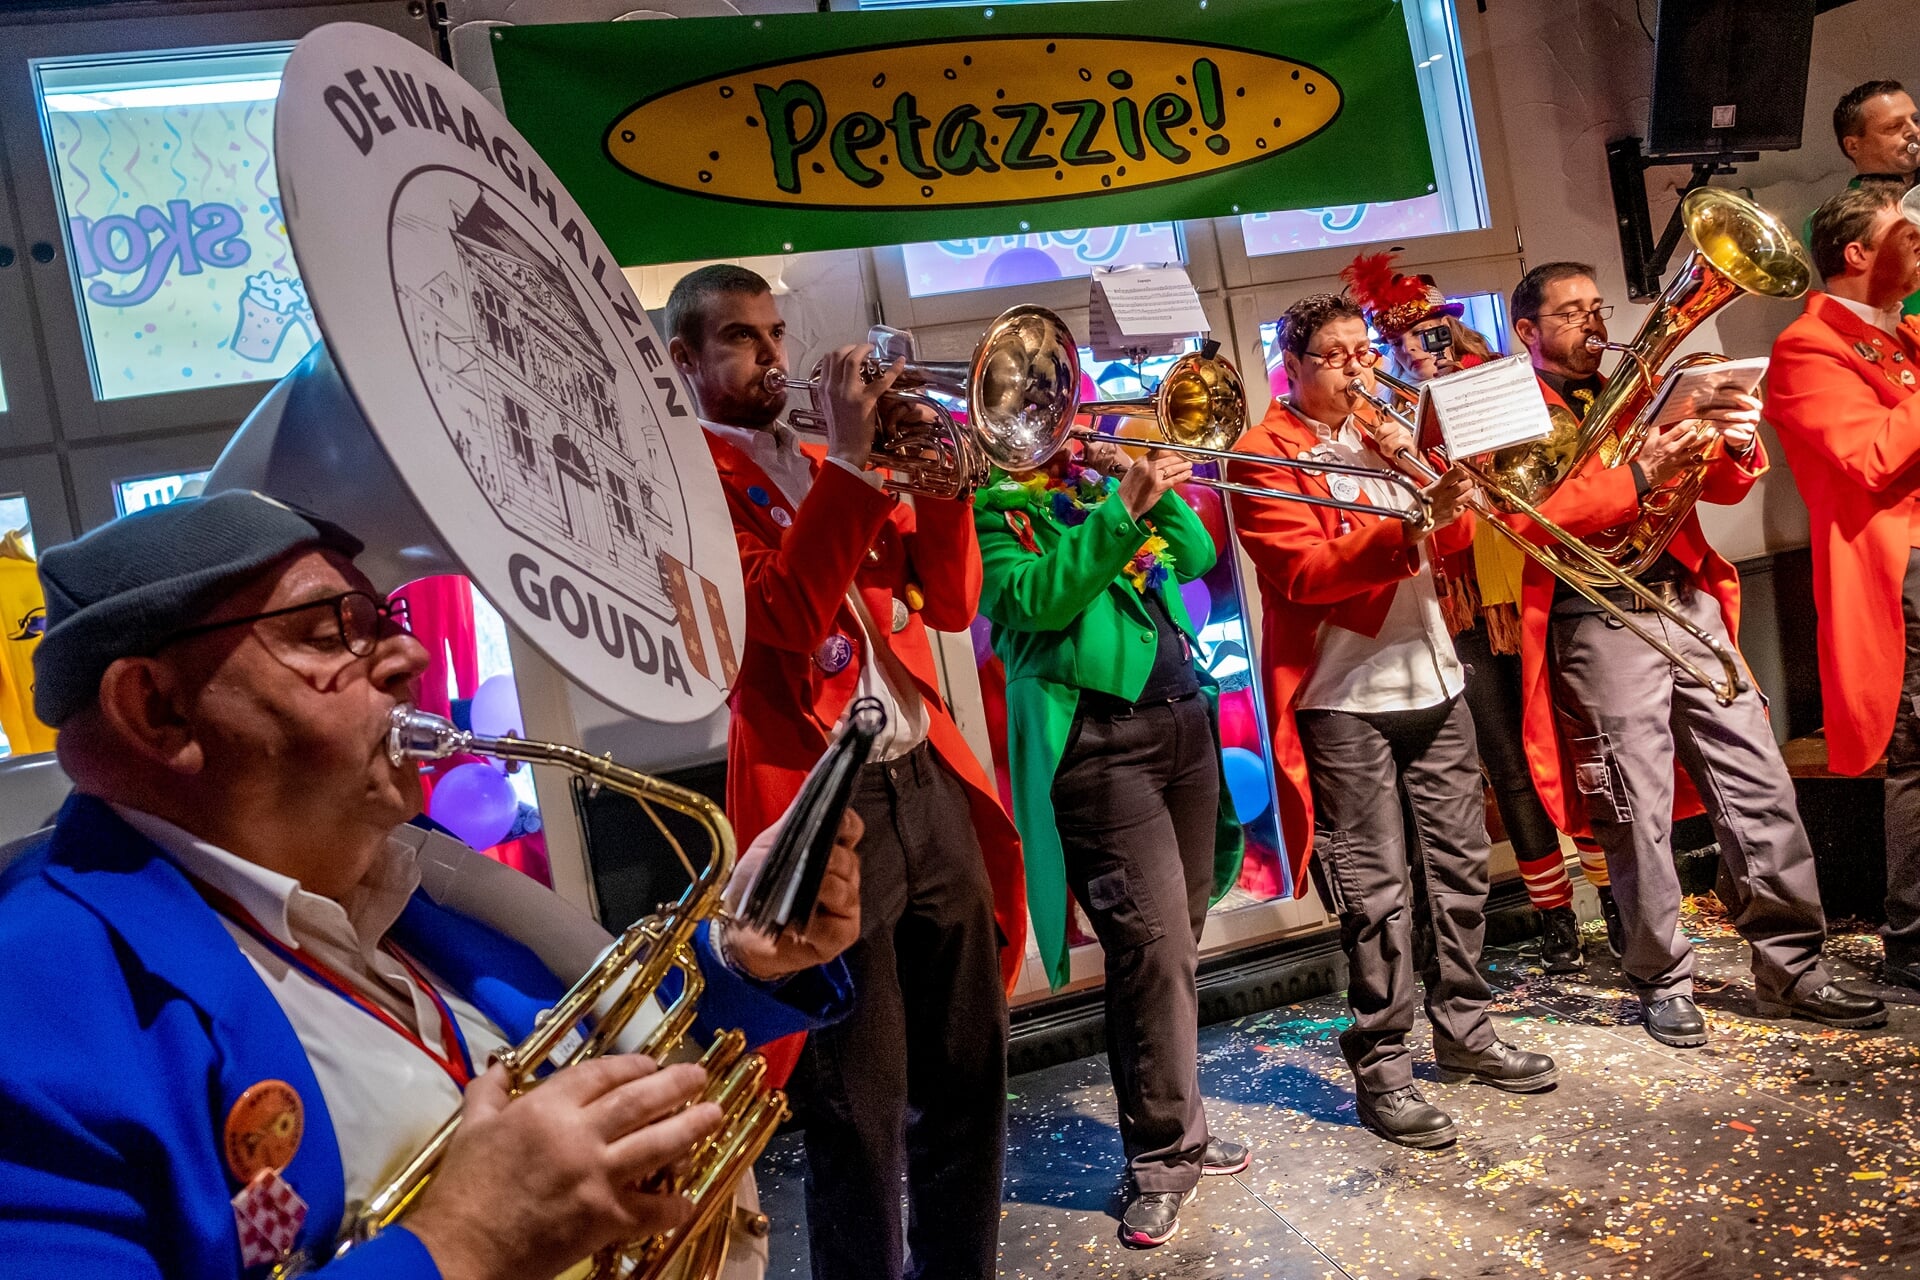 Petazzie! trok muziekformaties uit verschillende plekken in Nederland, zoals De Waaghalzen uit Gouda. De achttiende editie kon ternauwernood worden georganiseerd.